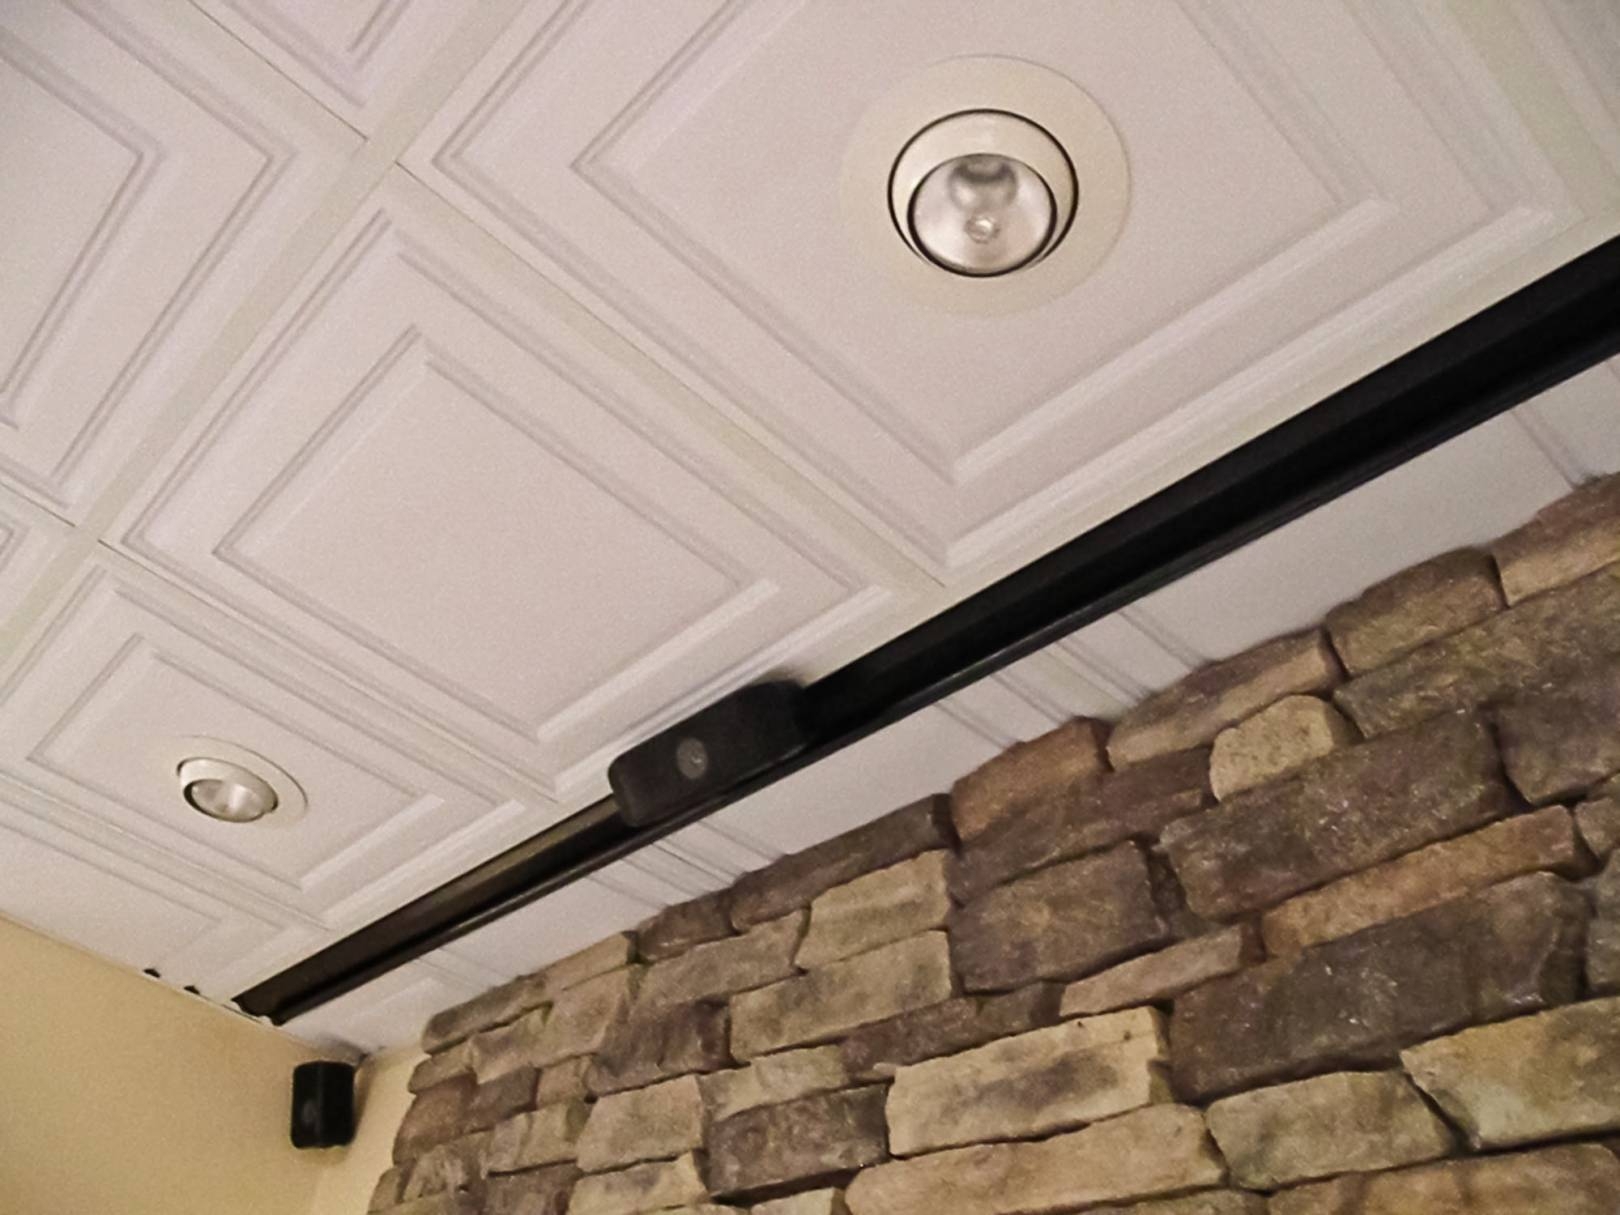 Best Way To Cut Acoustic Ceiling Tiles Best Way To Cut Acoustic Ceiling Tiles best way to cut plastic ceiling tiles ceiling tiles 1620 X 1215